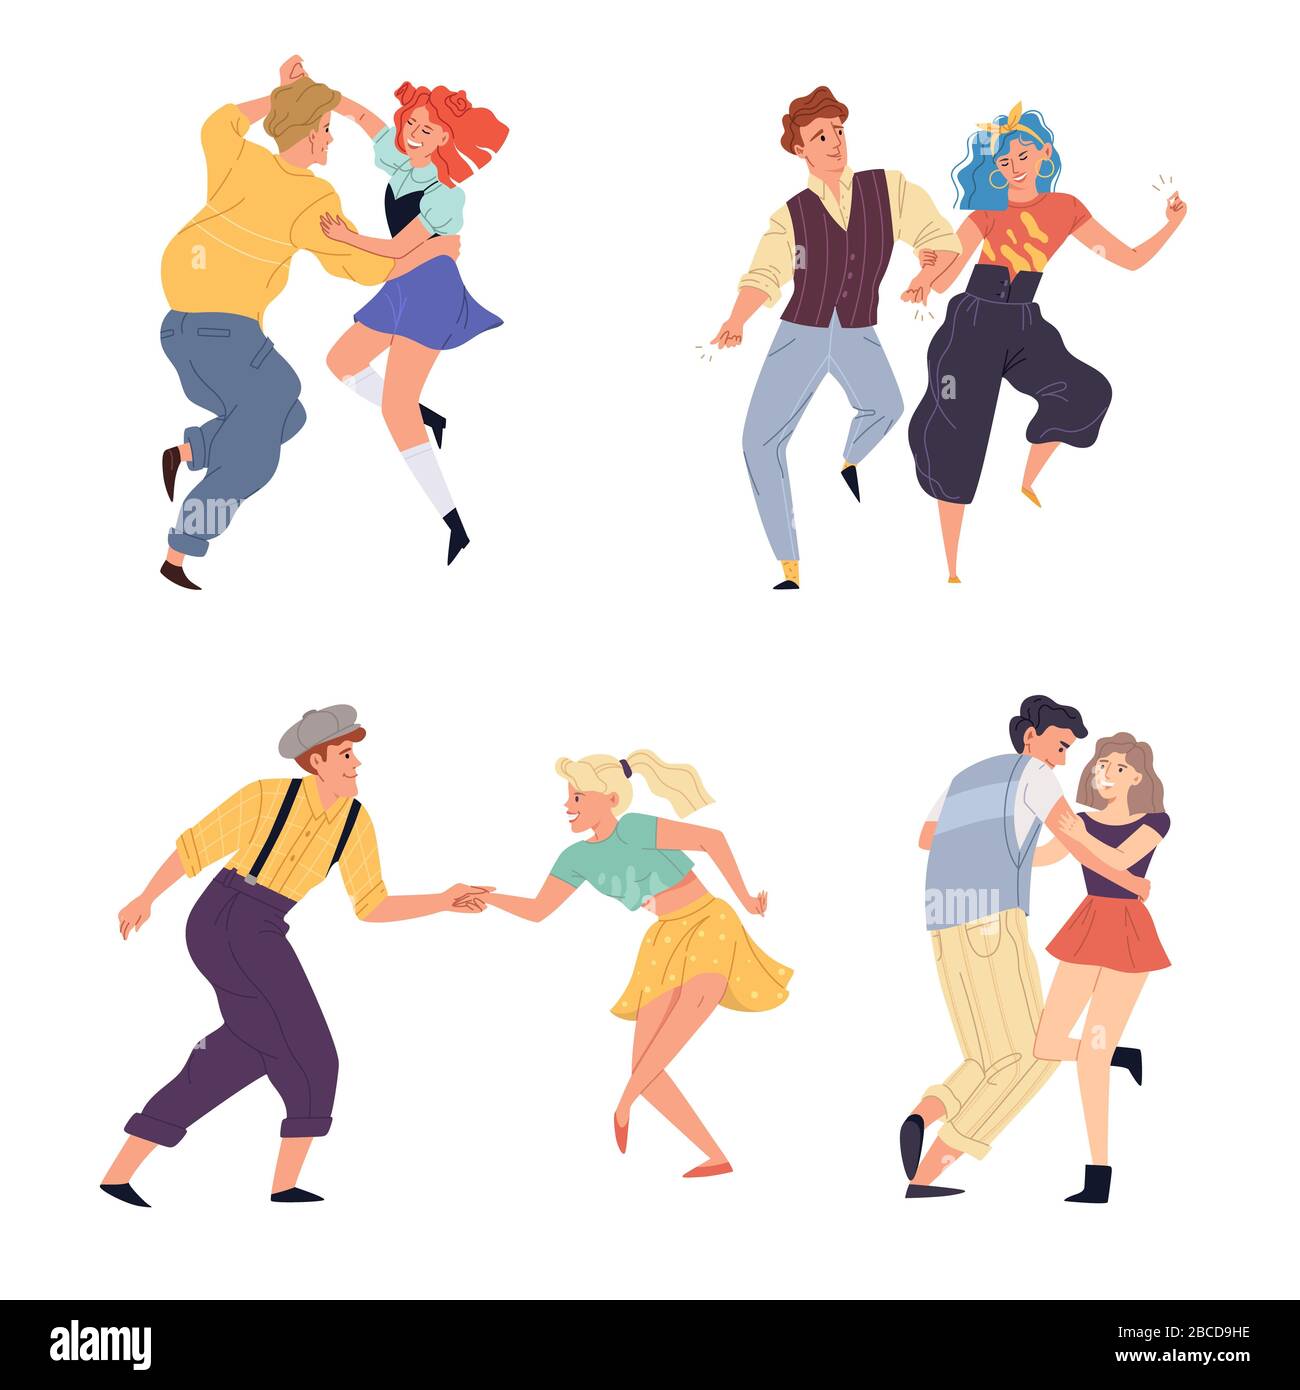 Vektor-Illustration von Paaren tanzen Twist Set. Junge Männer und Frauen tanzen auf Retro-Party oder nostalgischer Diskothek der 1950er, 1960er und 1970er Jahre. Flache Karikatur c Stockfoto